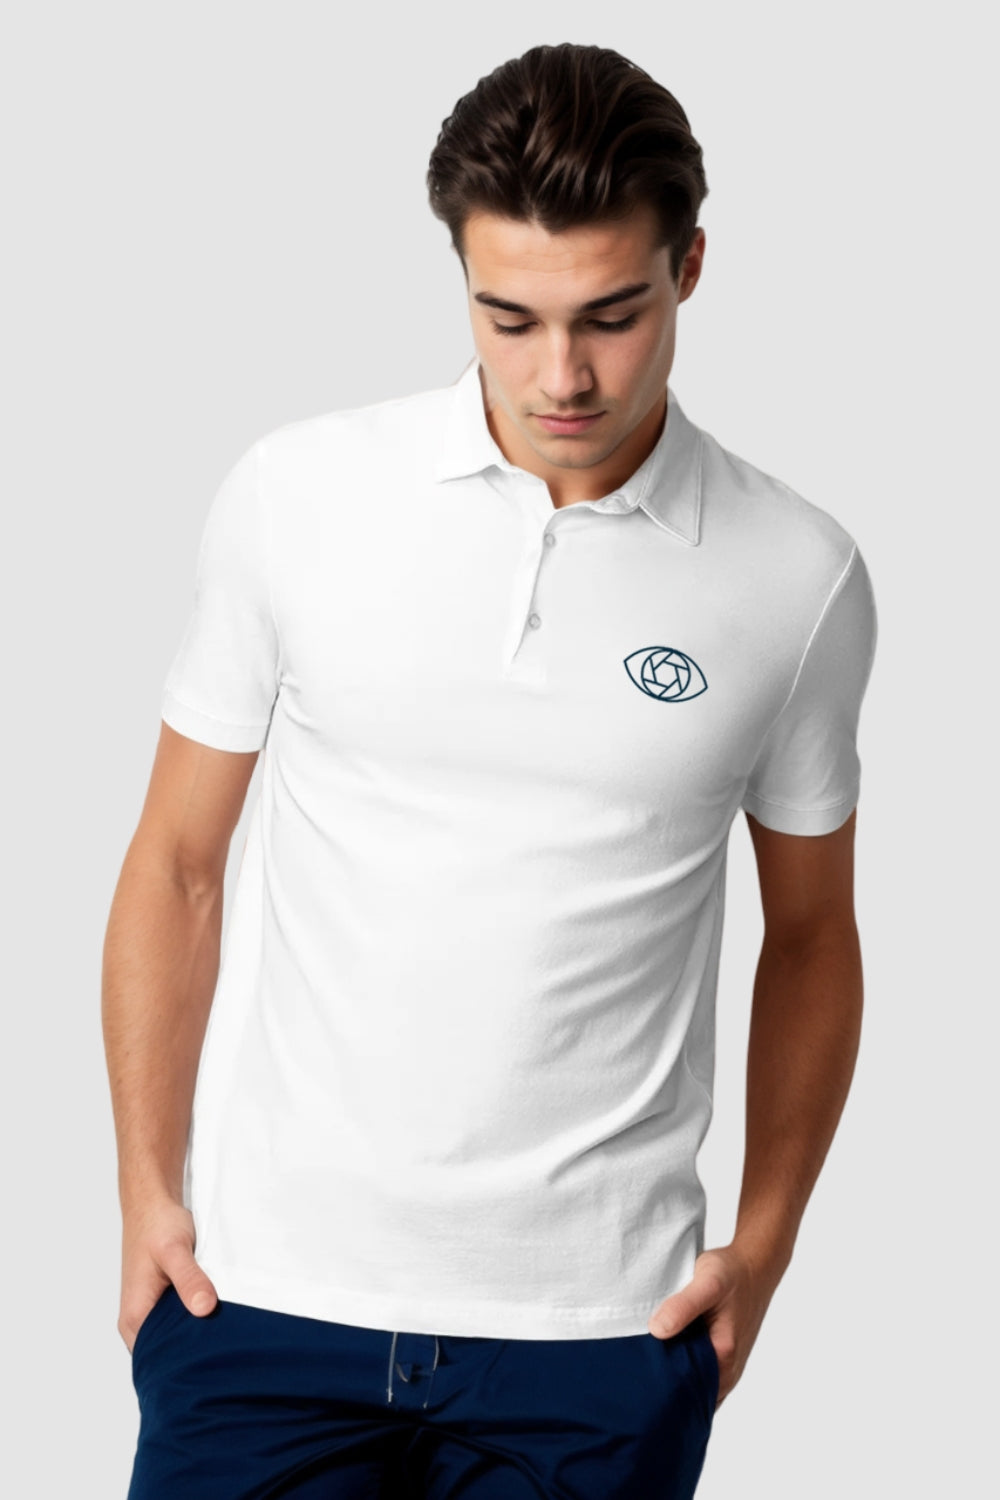 Cam Eye Pocket Printed White Polo Tshirt